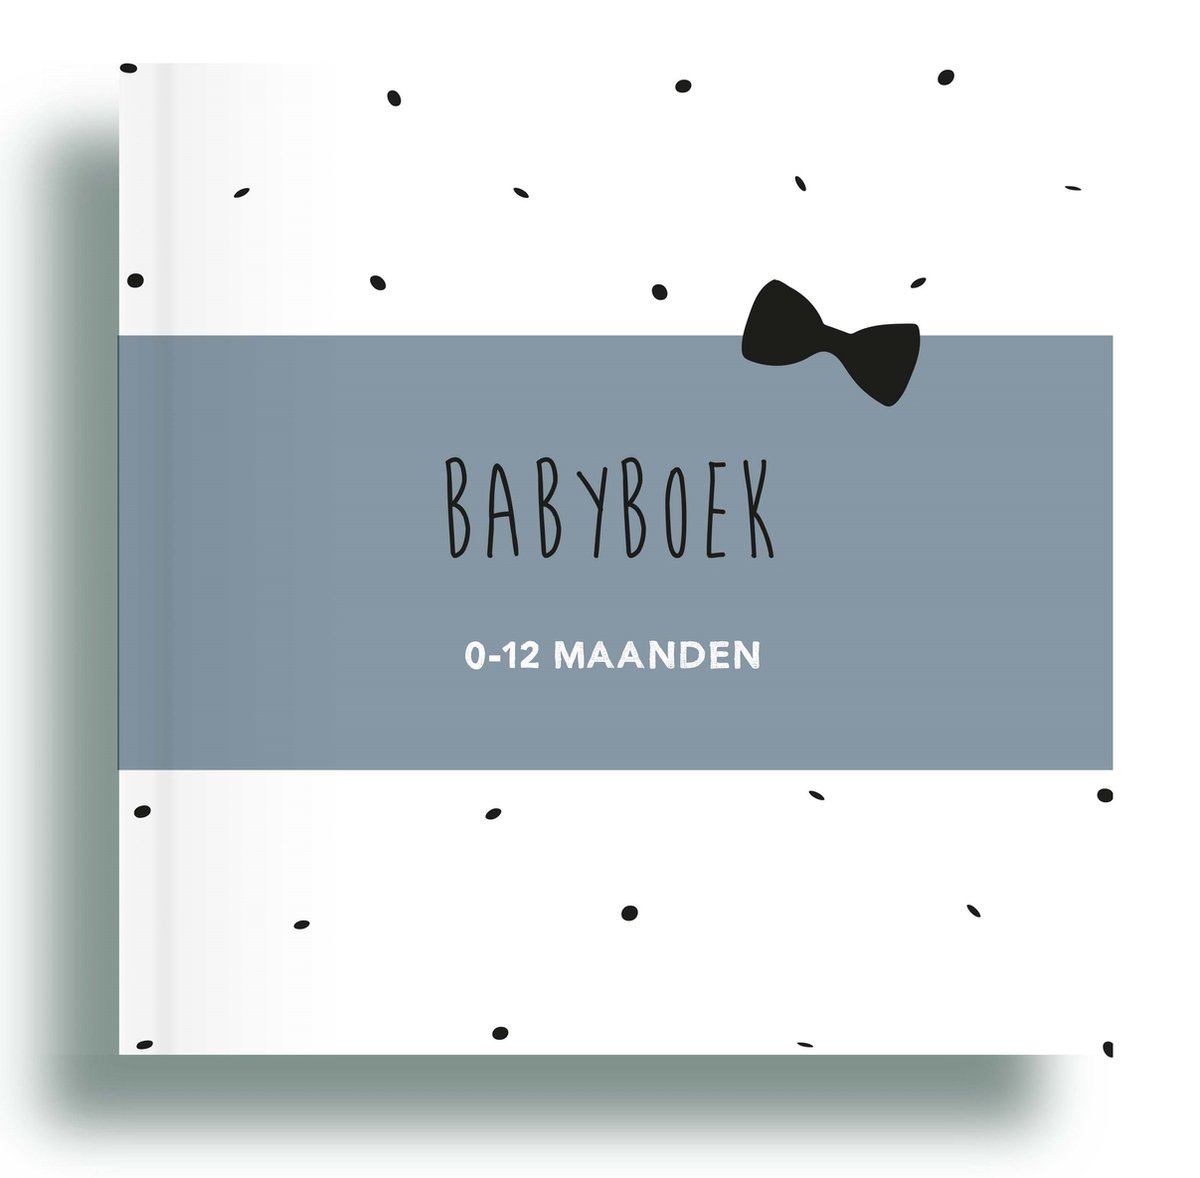 Babyboek 0-12 maanden blauw - Invulboek baby - Babydagboek - Invulboek baby's eerste jaar - Mijn eerste jaar dagboek - Dagboek 0-12 maanden - Baby invulboek eerste jaar - Baby's eerste jaar invulboek - Geboorteboek 1e jaar - Baby eerste jaar - Zebrapaardje